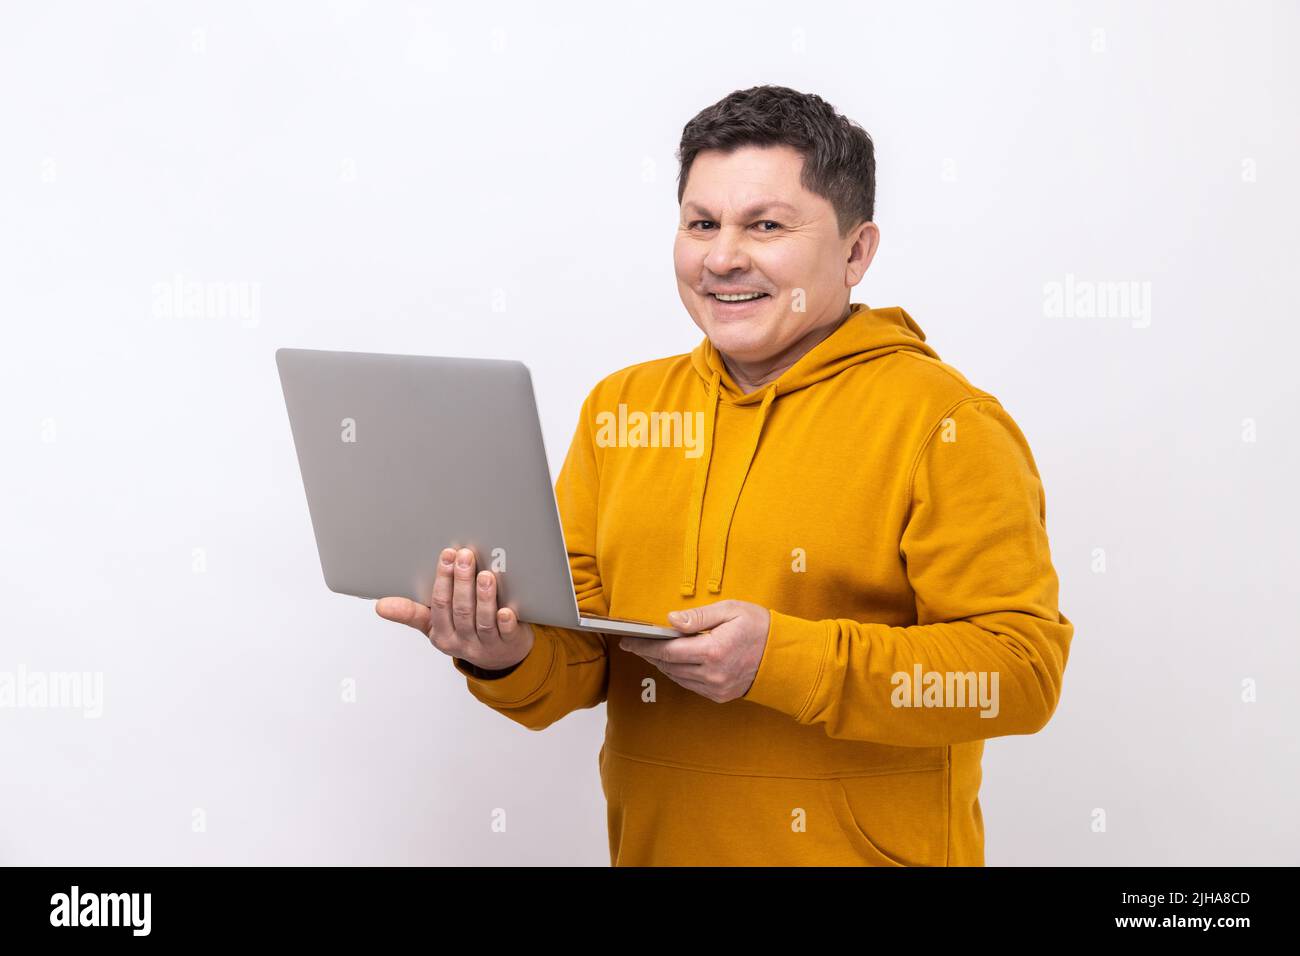 Porträt eines Mannes, der am Laptop E-Mails tippt oder im sozialen Netzwerk chattet, mit fröhlichem Gesichtsausdruck auf die Kamera blickt und einen Hoodie im urbanen Stil trägt. Innenaufnahme des Studios isoliert auf weißem Hintergrund. Stockfoto